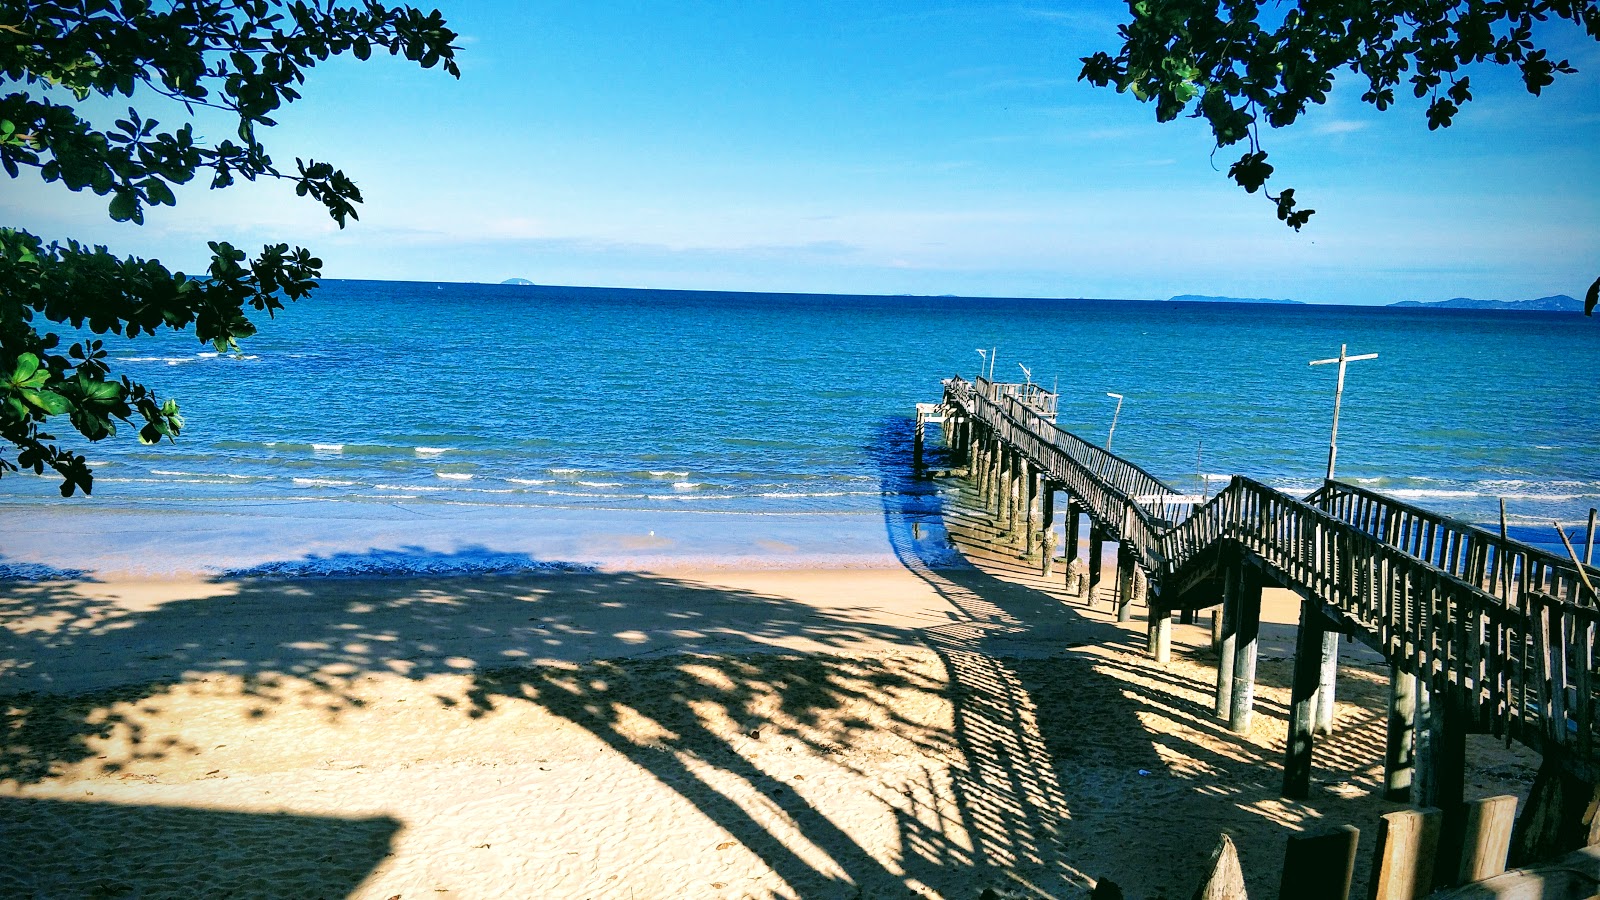 Photo de Tawanron Beach - endroit populaire parmi les connaisseurs de la détente